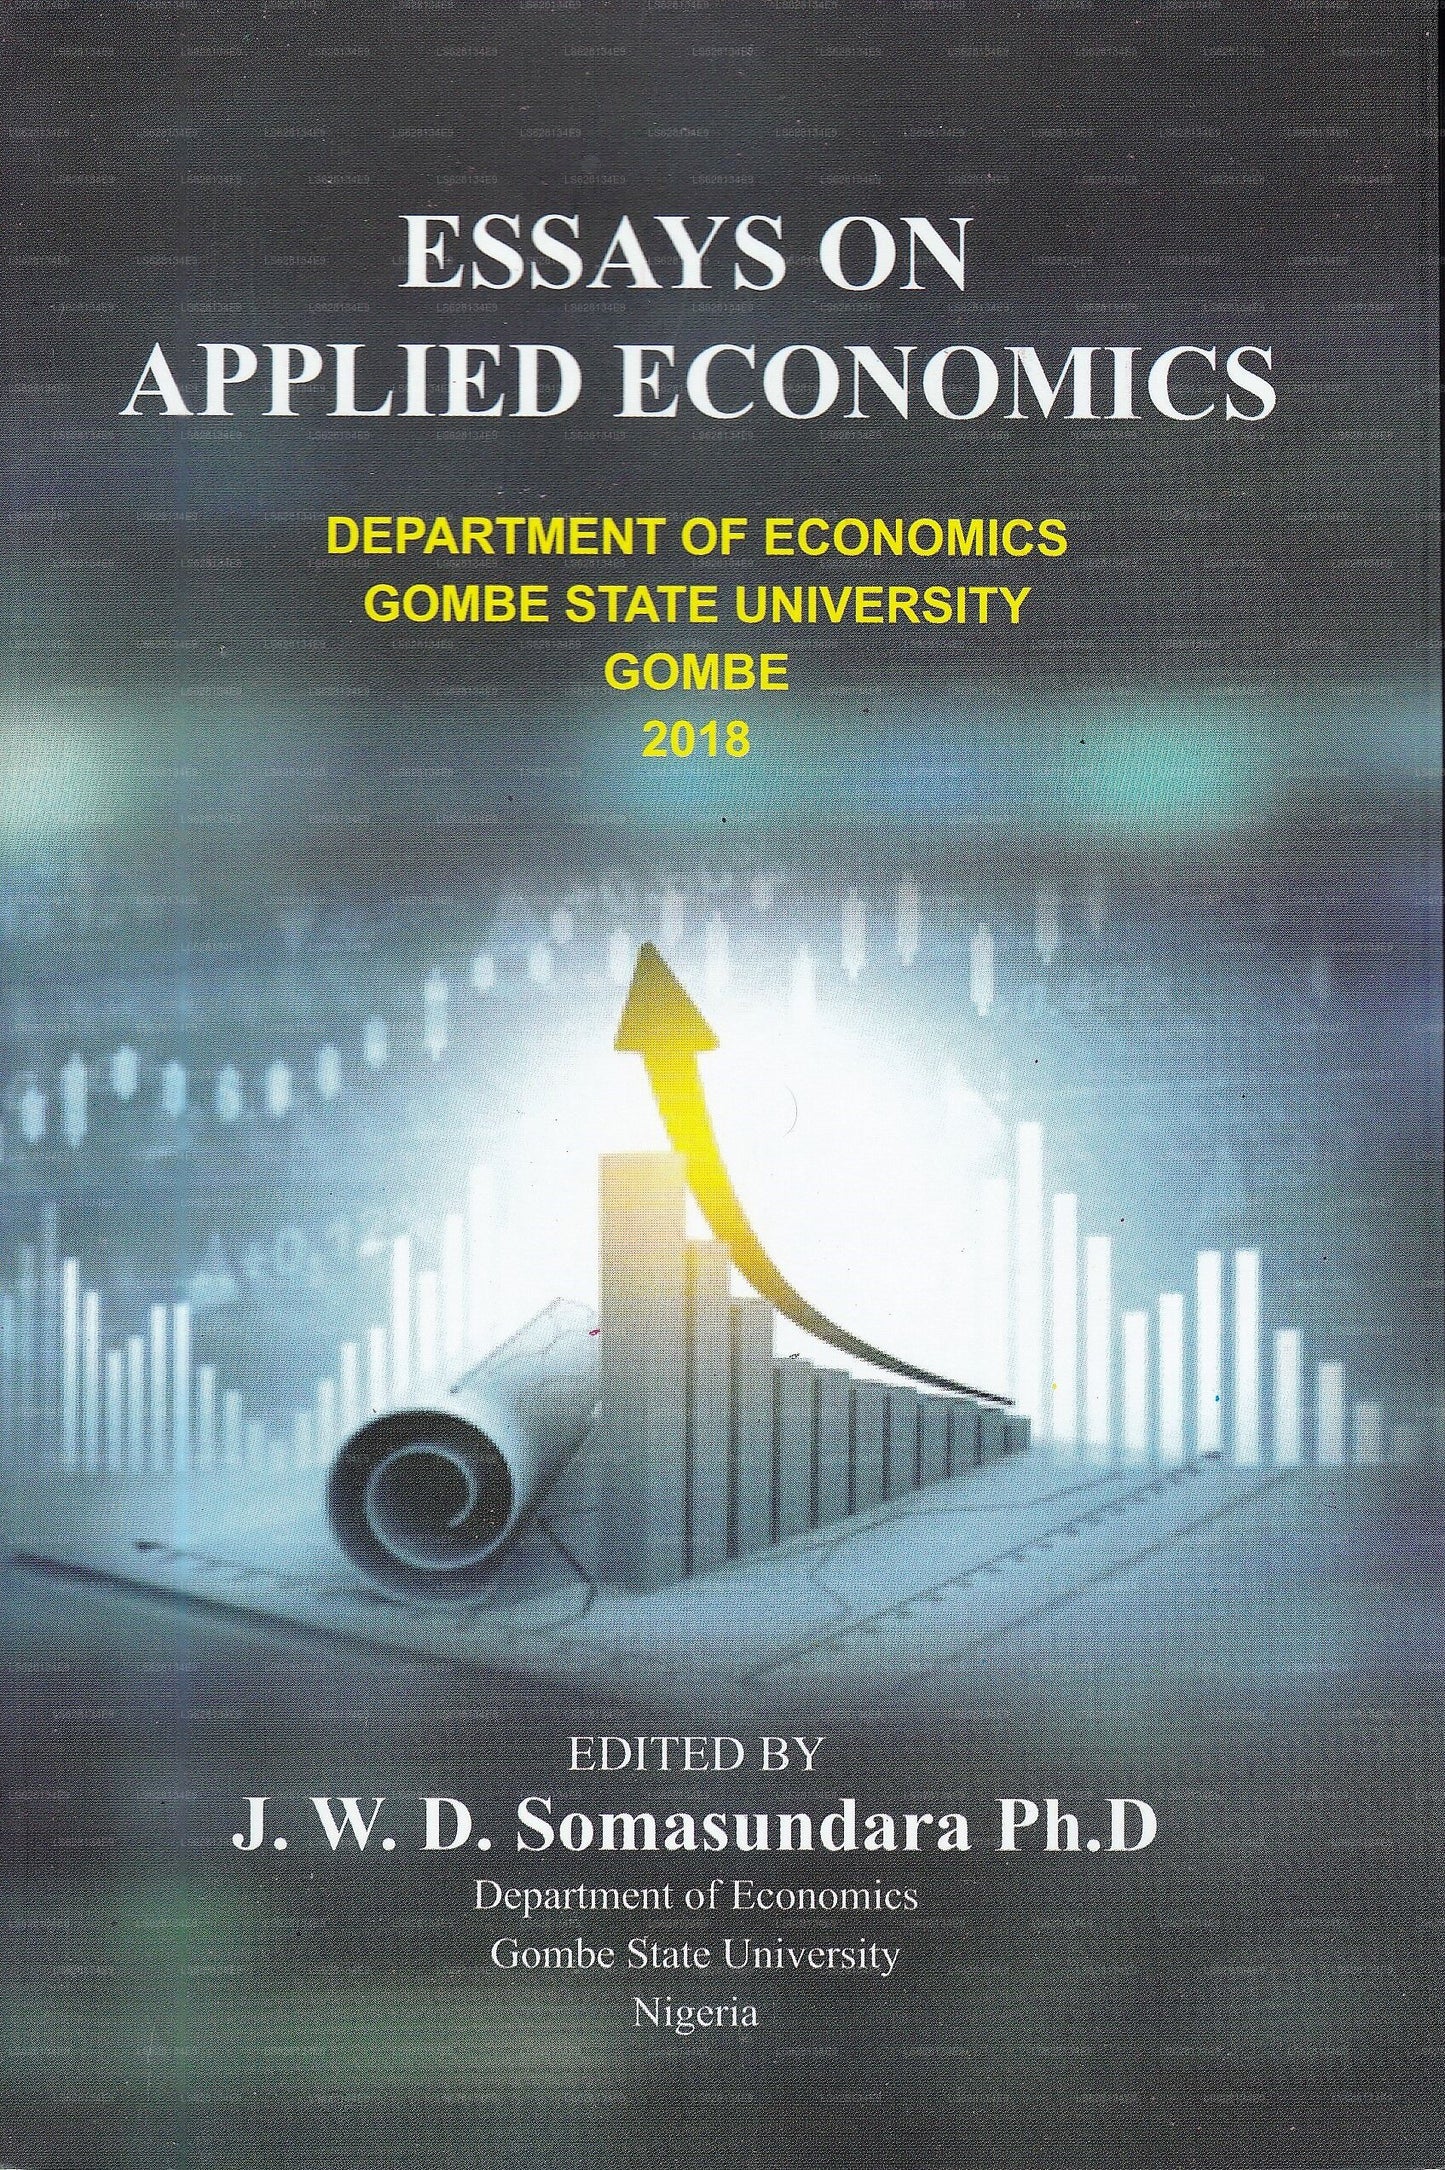 Essays On Applied Economics(Department of Economics Gombe State University Gombe 2018)